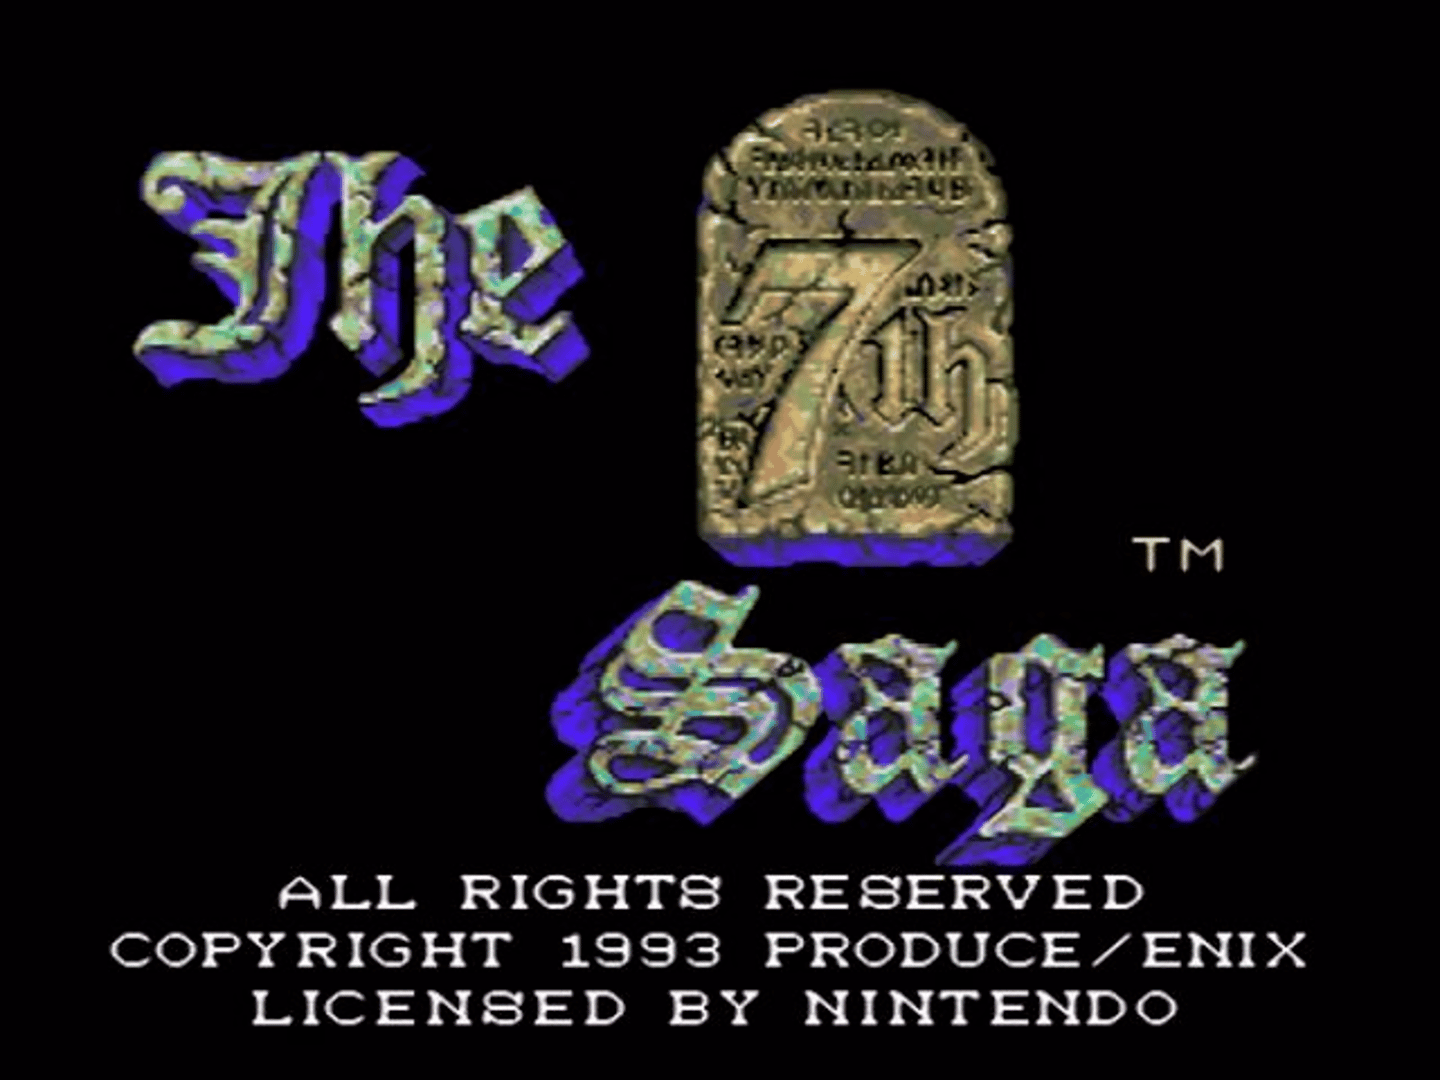 The 7th Saga screenshot